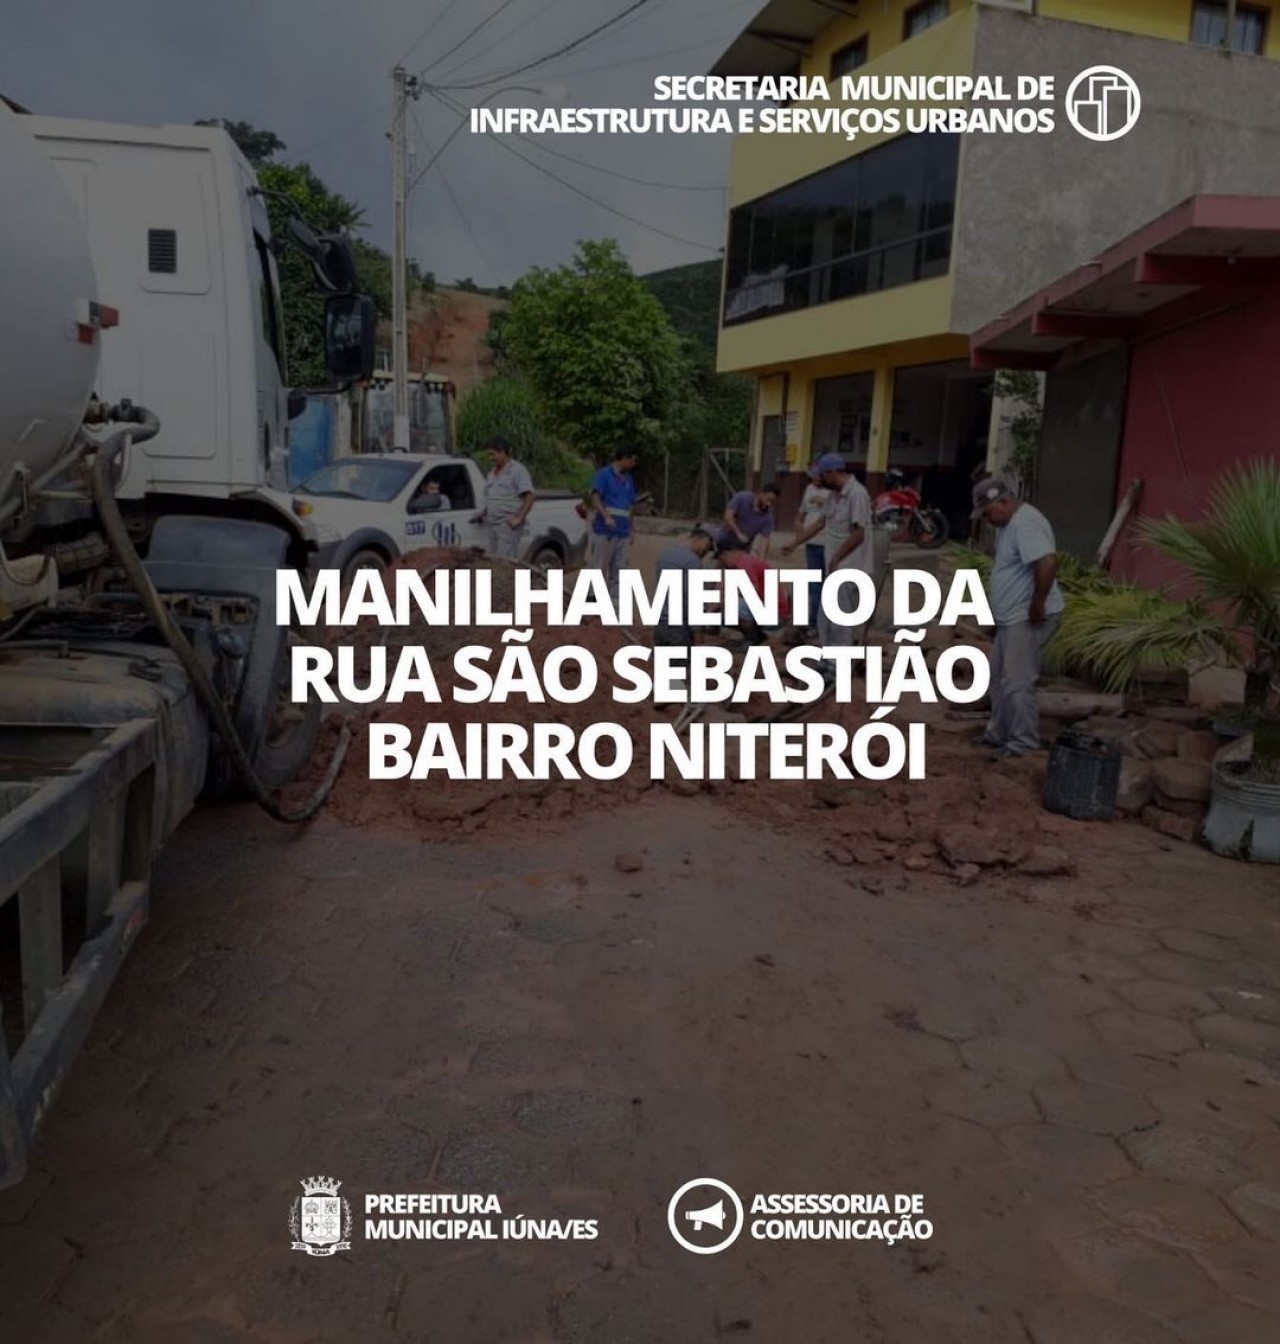 OBRA 07 - Manilhamento da rua São Sebastião (Niterói)